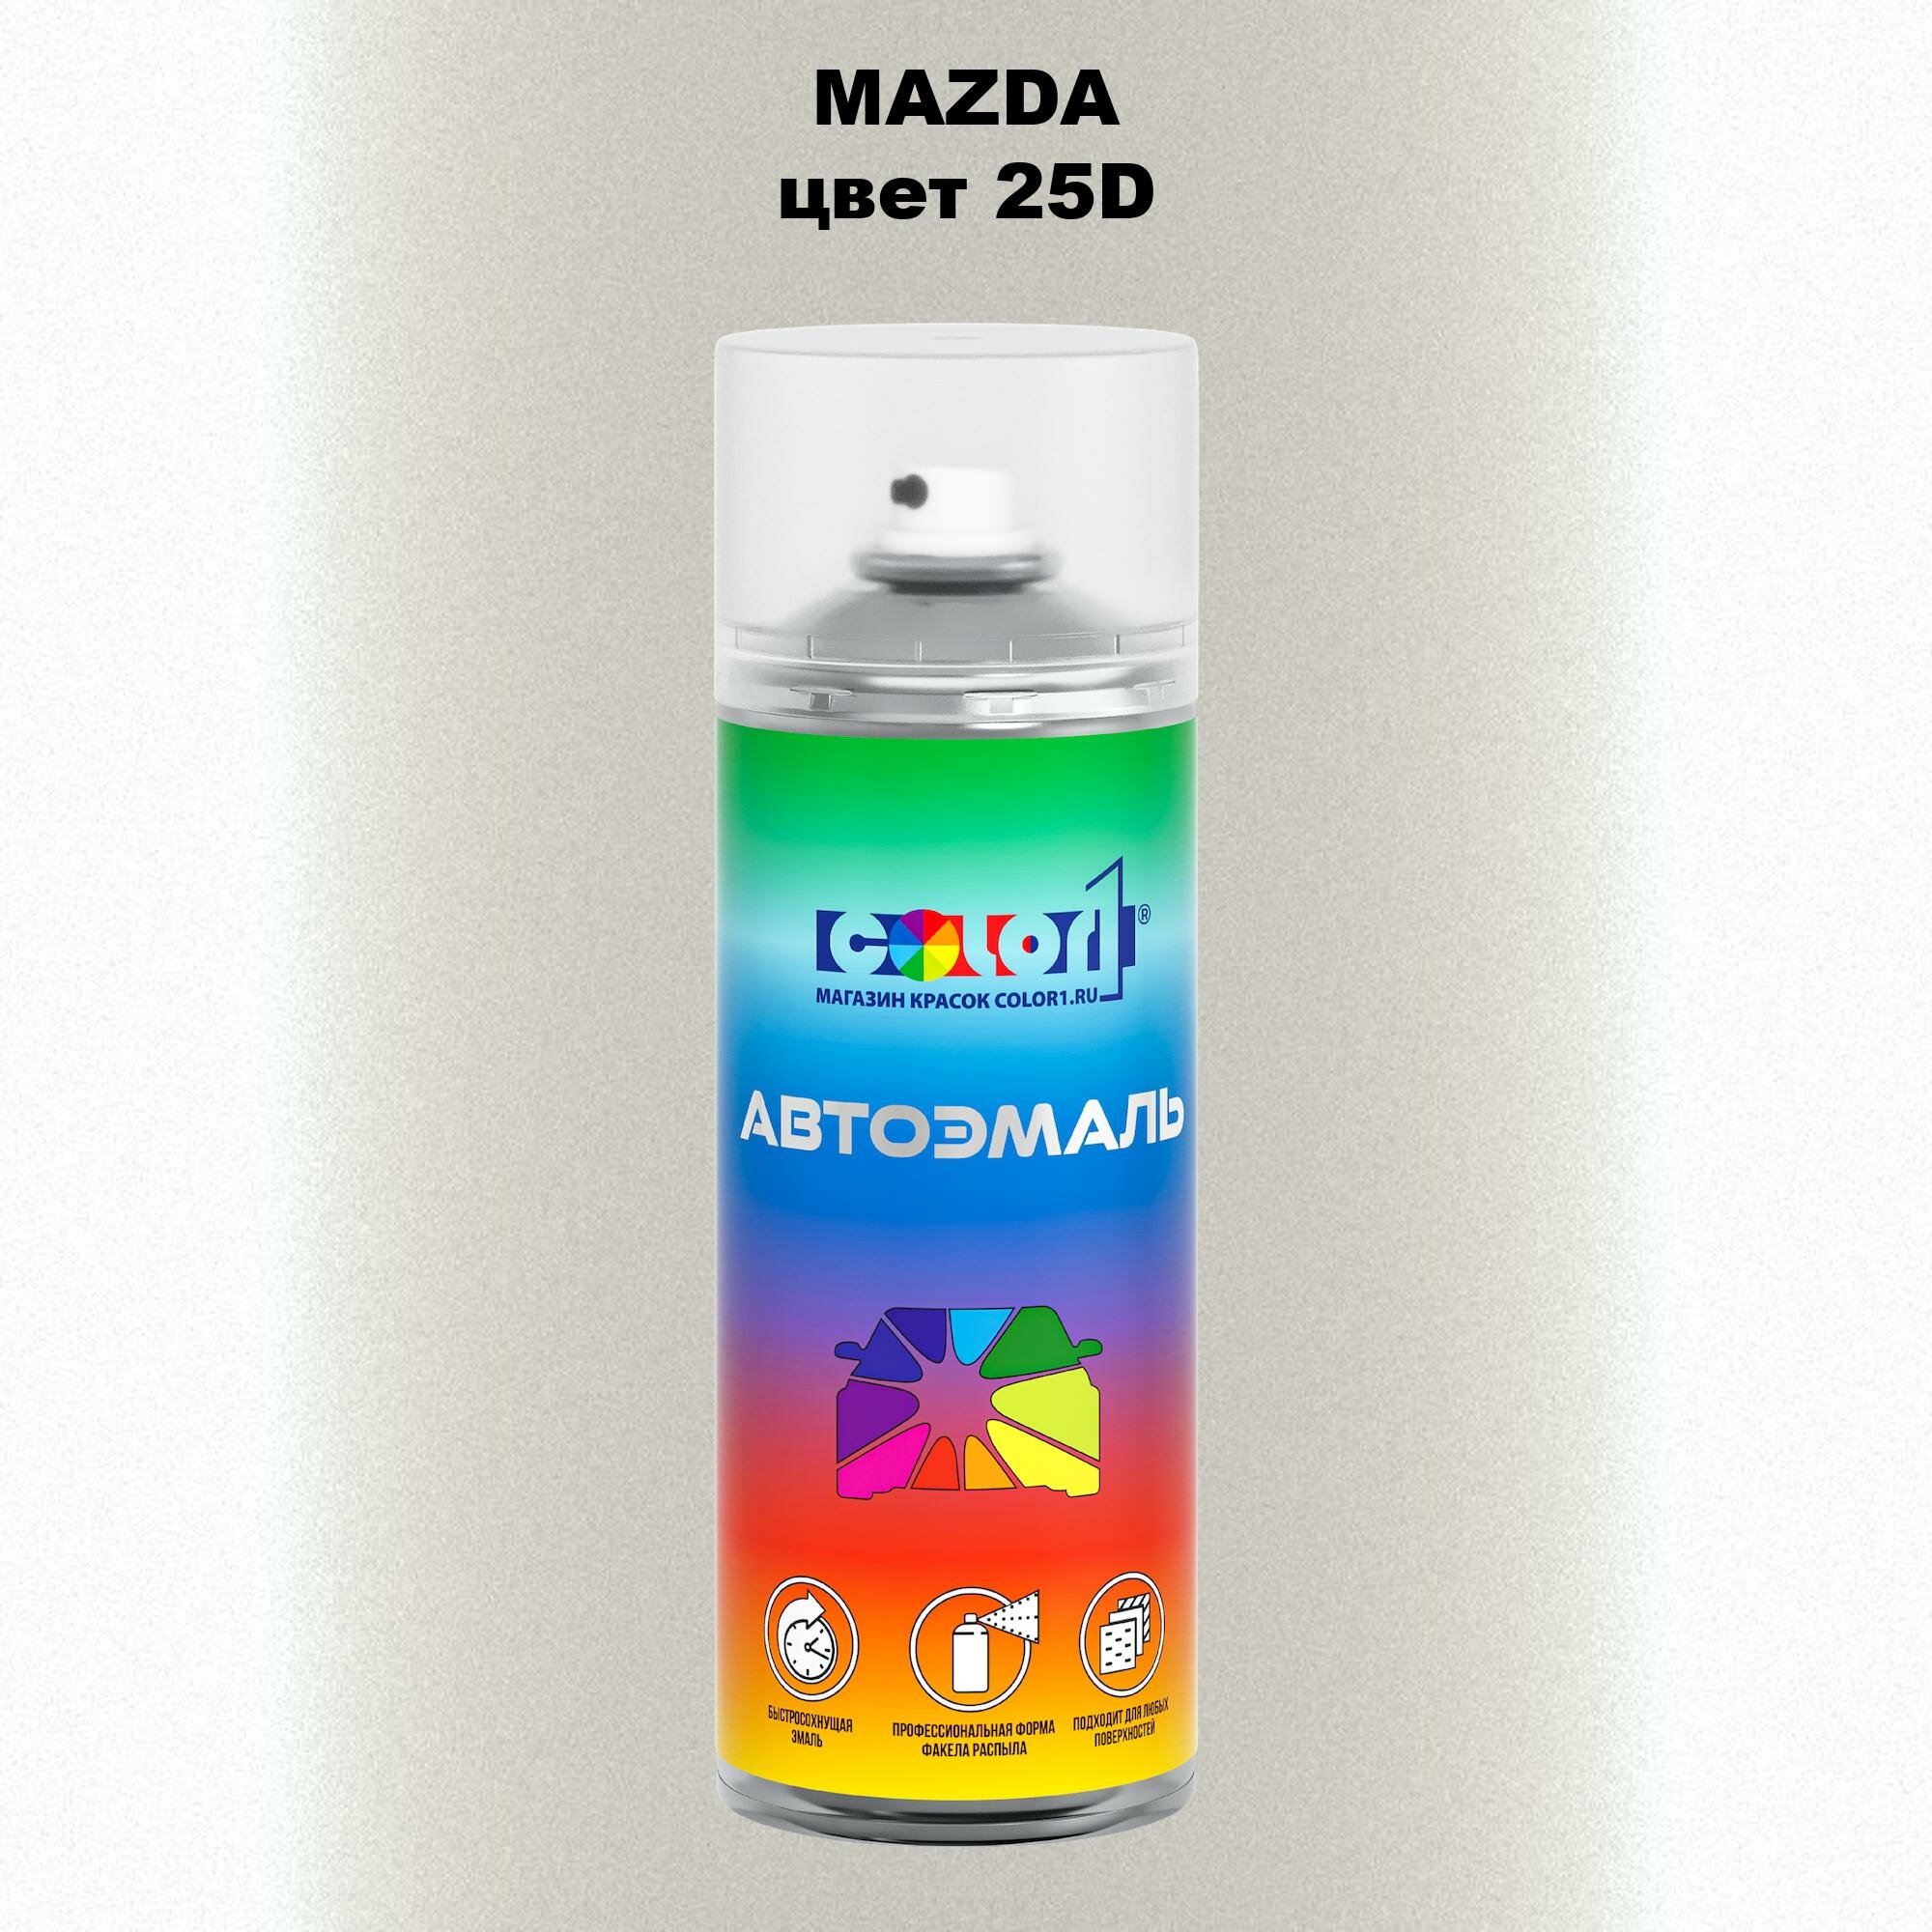 Аэрозольная краска 520мл, для MAZDA, цвет 25D - SNOWFLAKE WHITE, SNOWFLAKE WHITE PEARL MICA, WHITEWATER PEARL